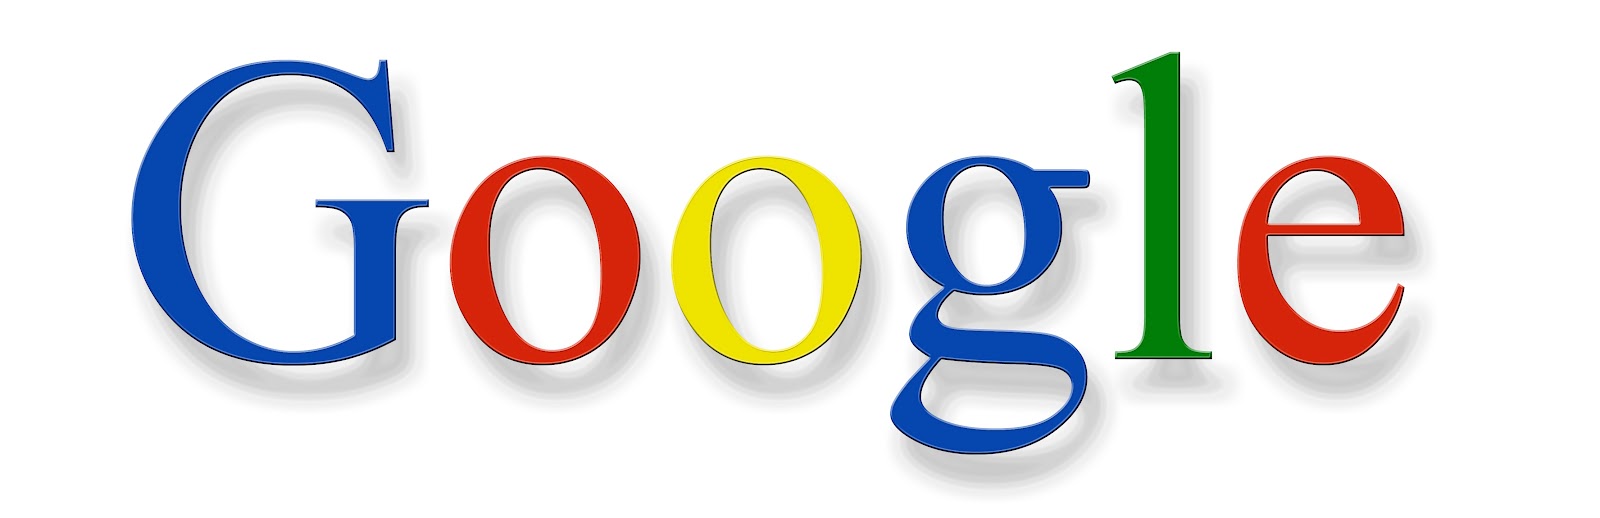 Тематический рисунок гугл 4 буквы. Гугл. Цветной логотип гугл. Надпись Google. Гугл 2010.